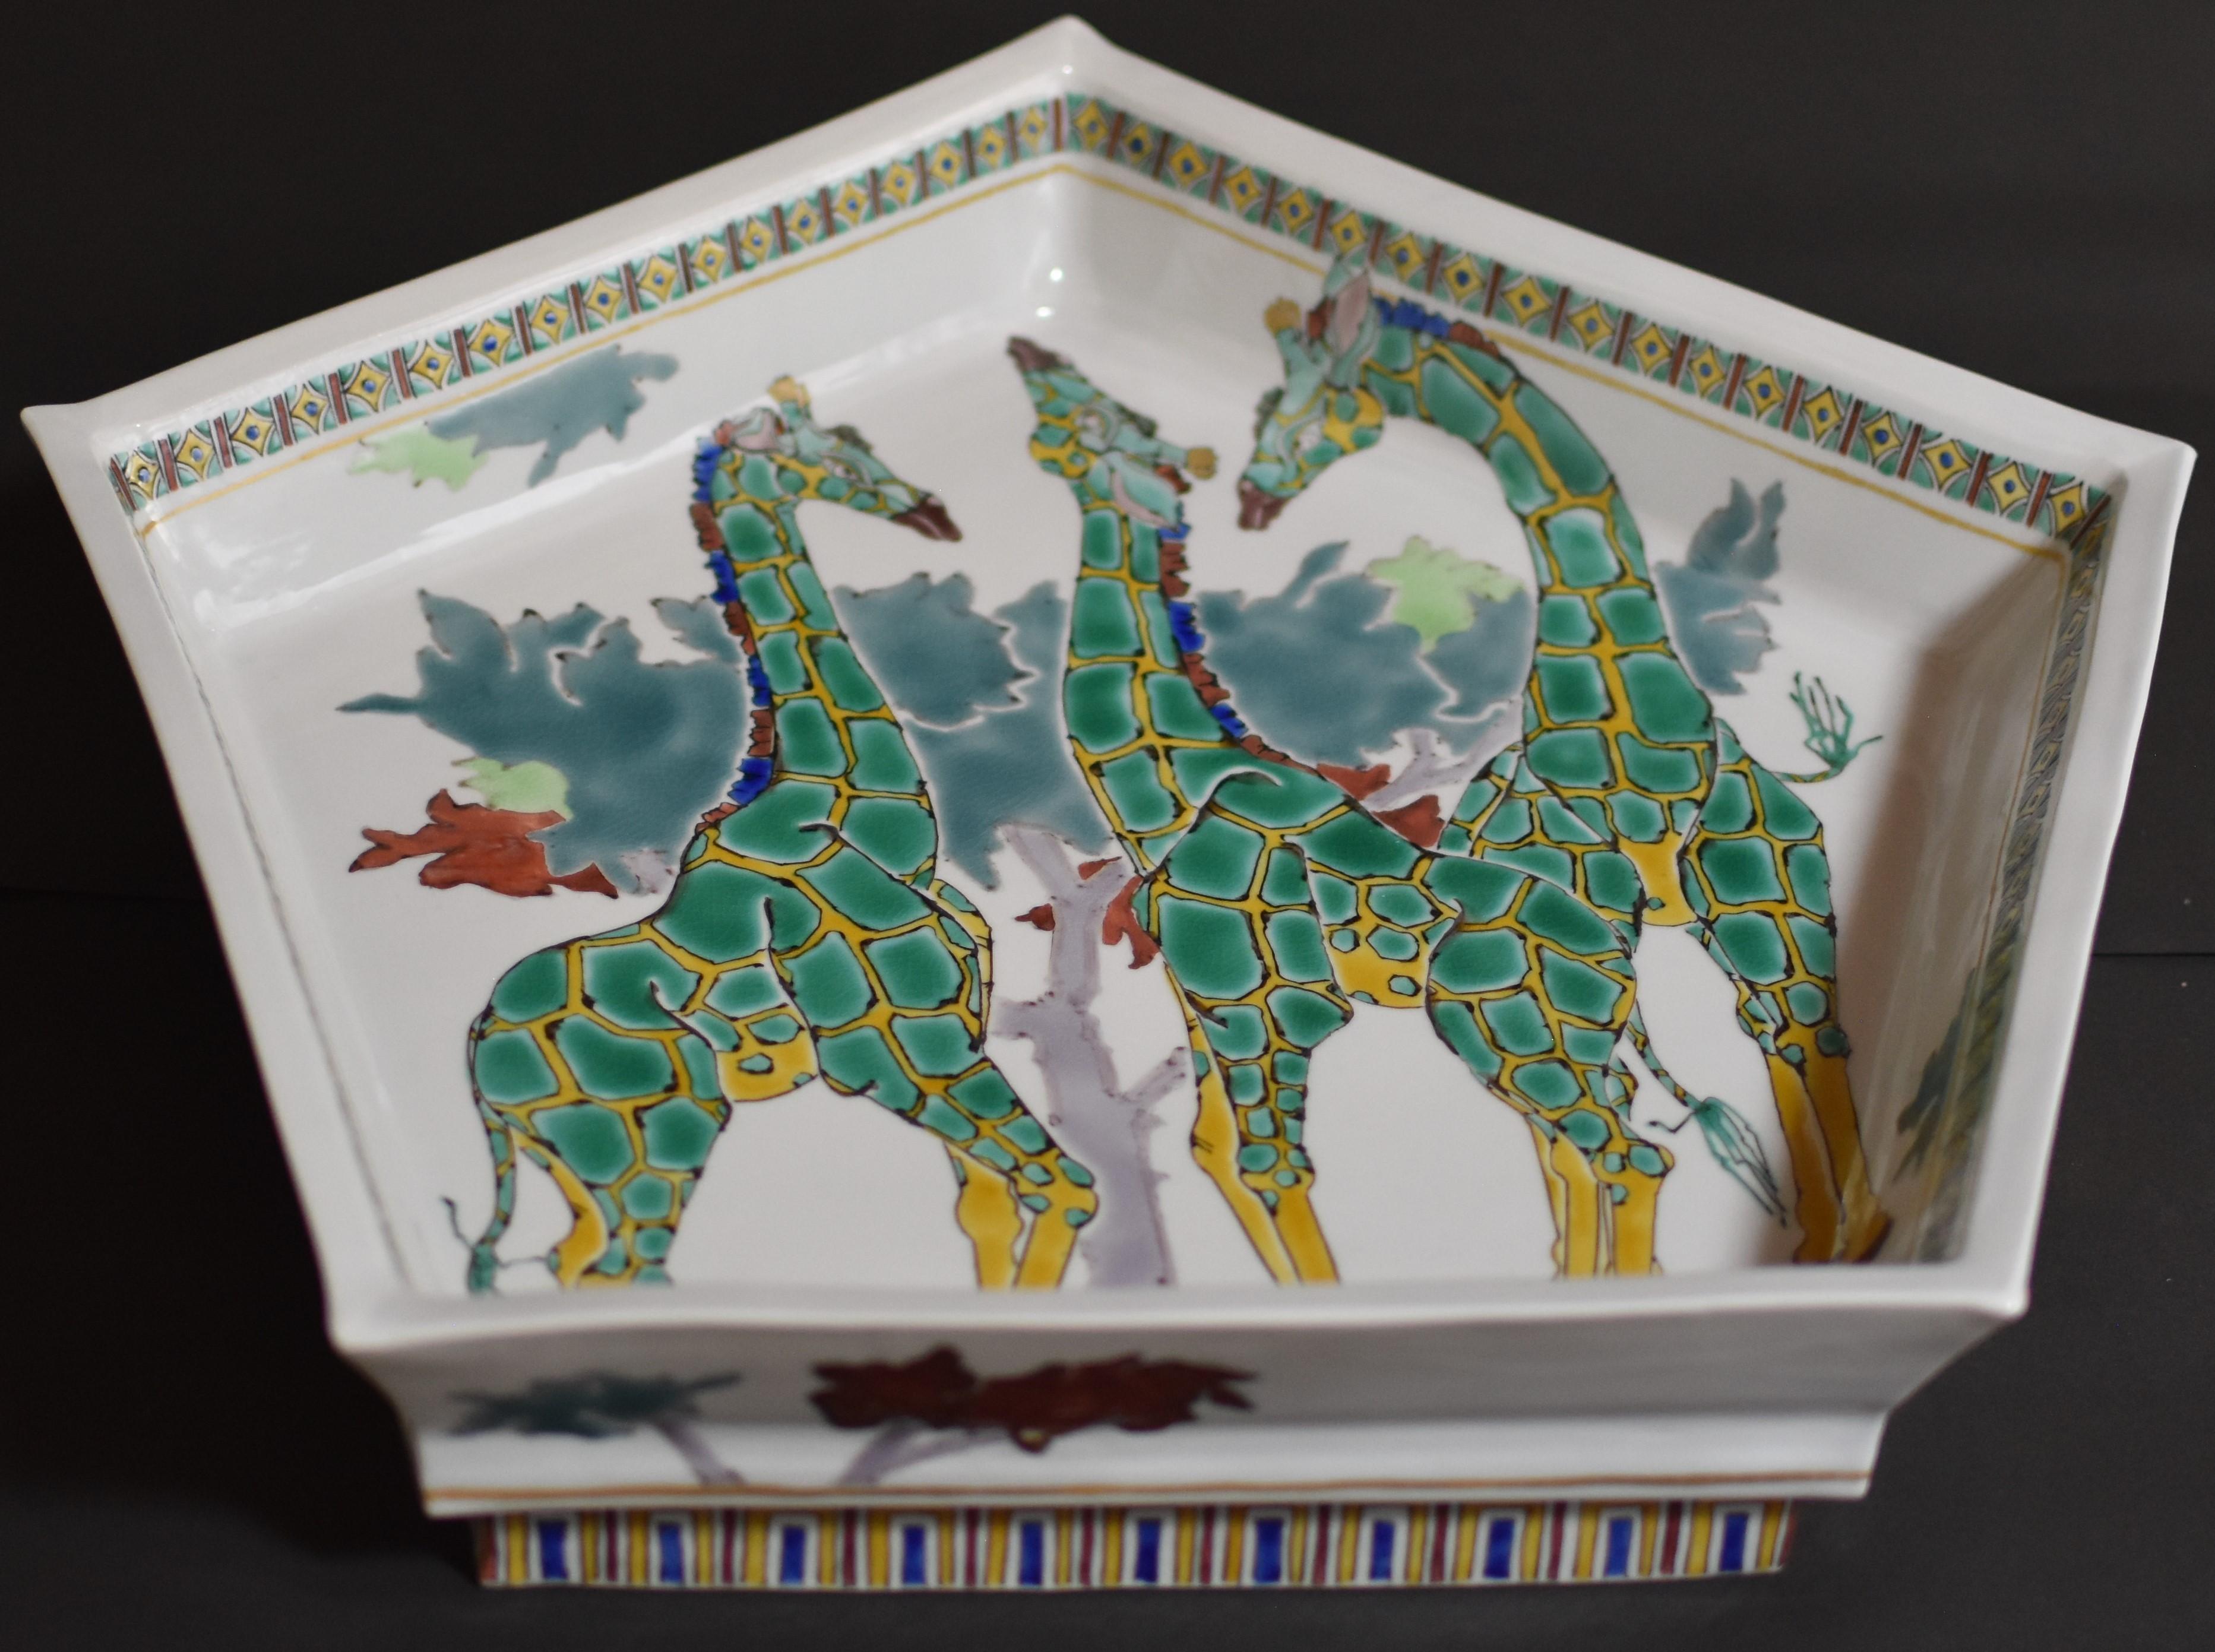 Außergewöhnliches zeitgenössisches japanisches Porzellan in Museumsqualität, handbemalt in lebhaftem Grün und Gelb, in atemberaubender Pentagon-Form. Es zeigt eine einzigartige Interpretation von Giraffen und ist ein signiertes Meisterwerk eines